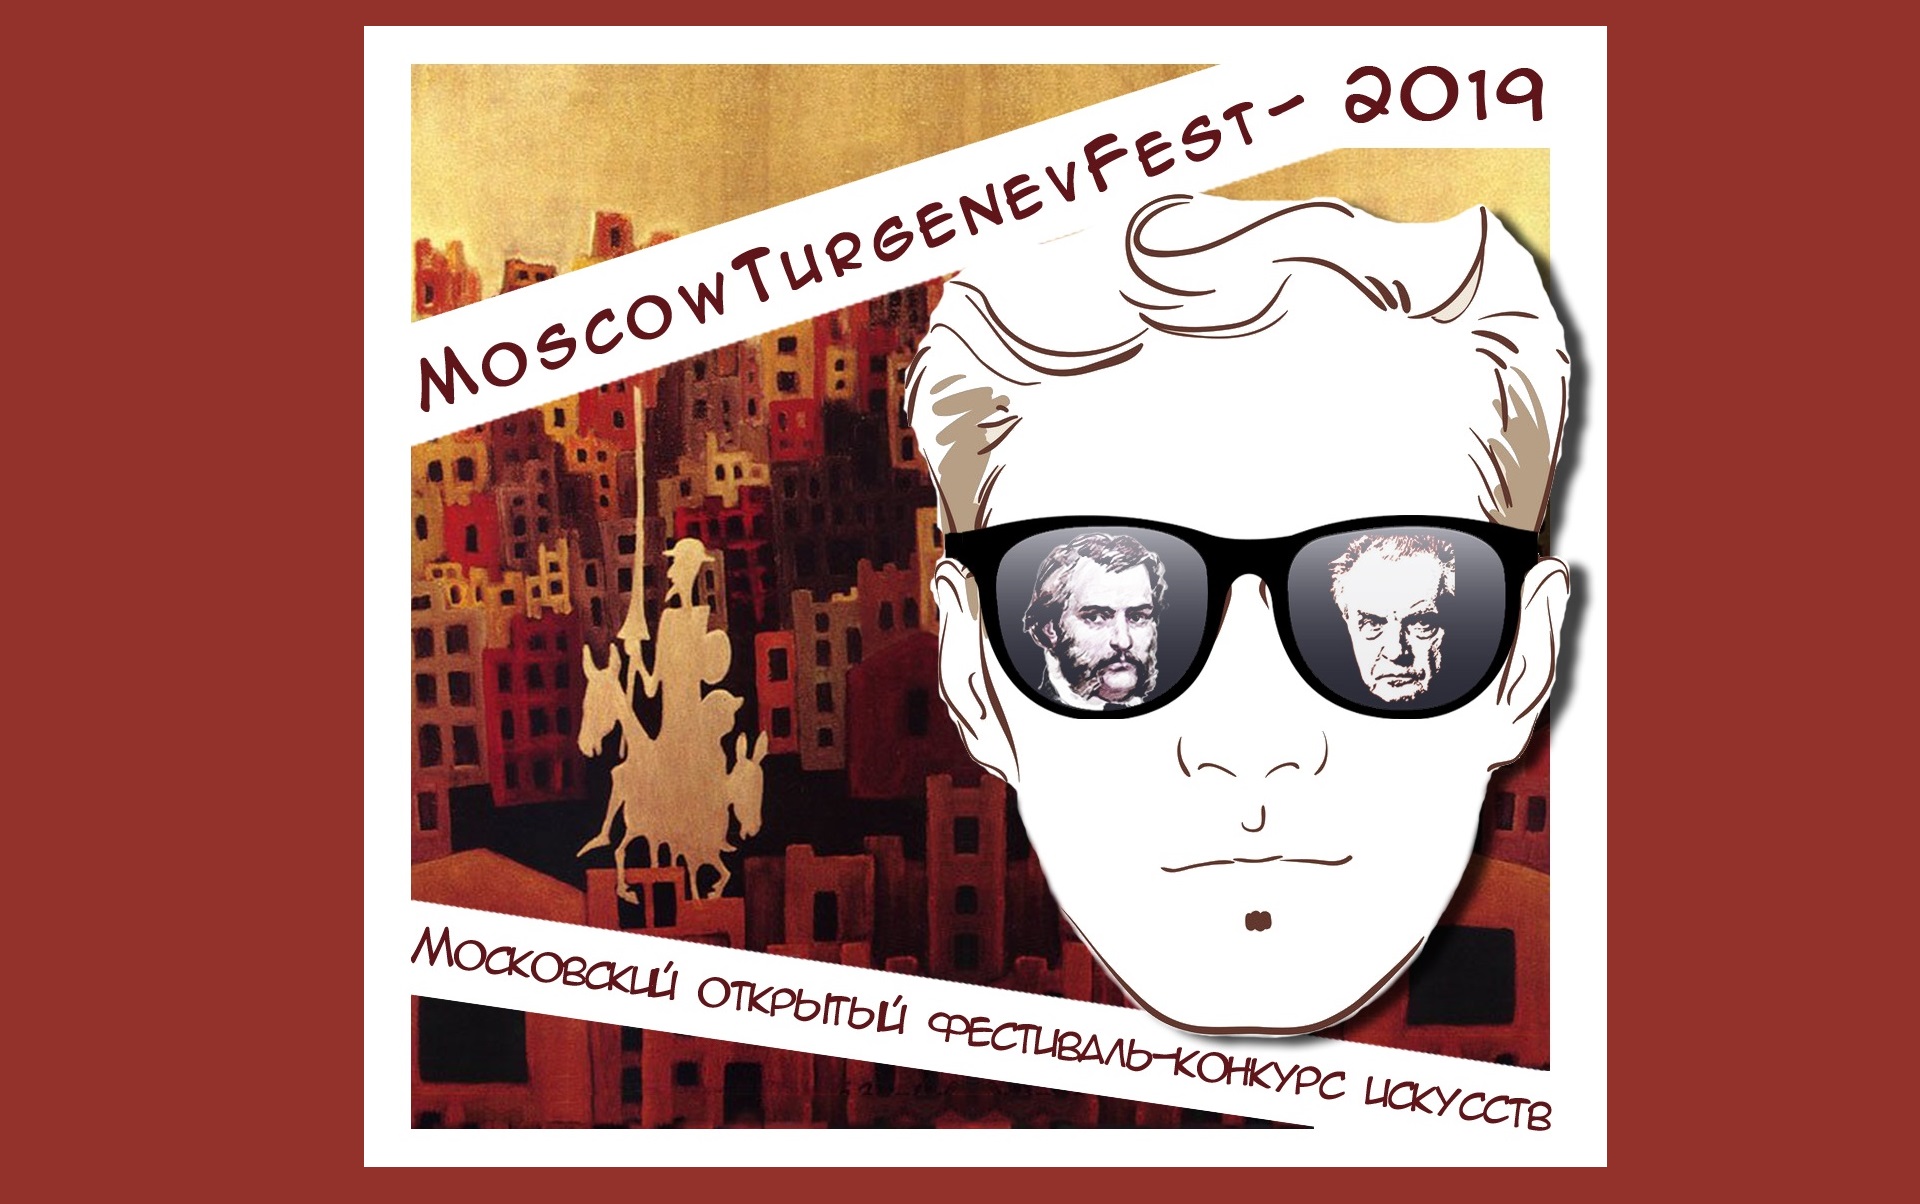 Московский открытый фестиваль-конкурс искусств «MoscowTurgenevFest-2019»